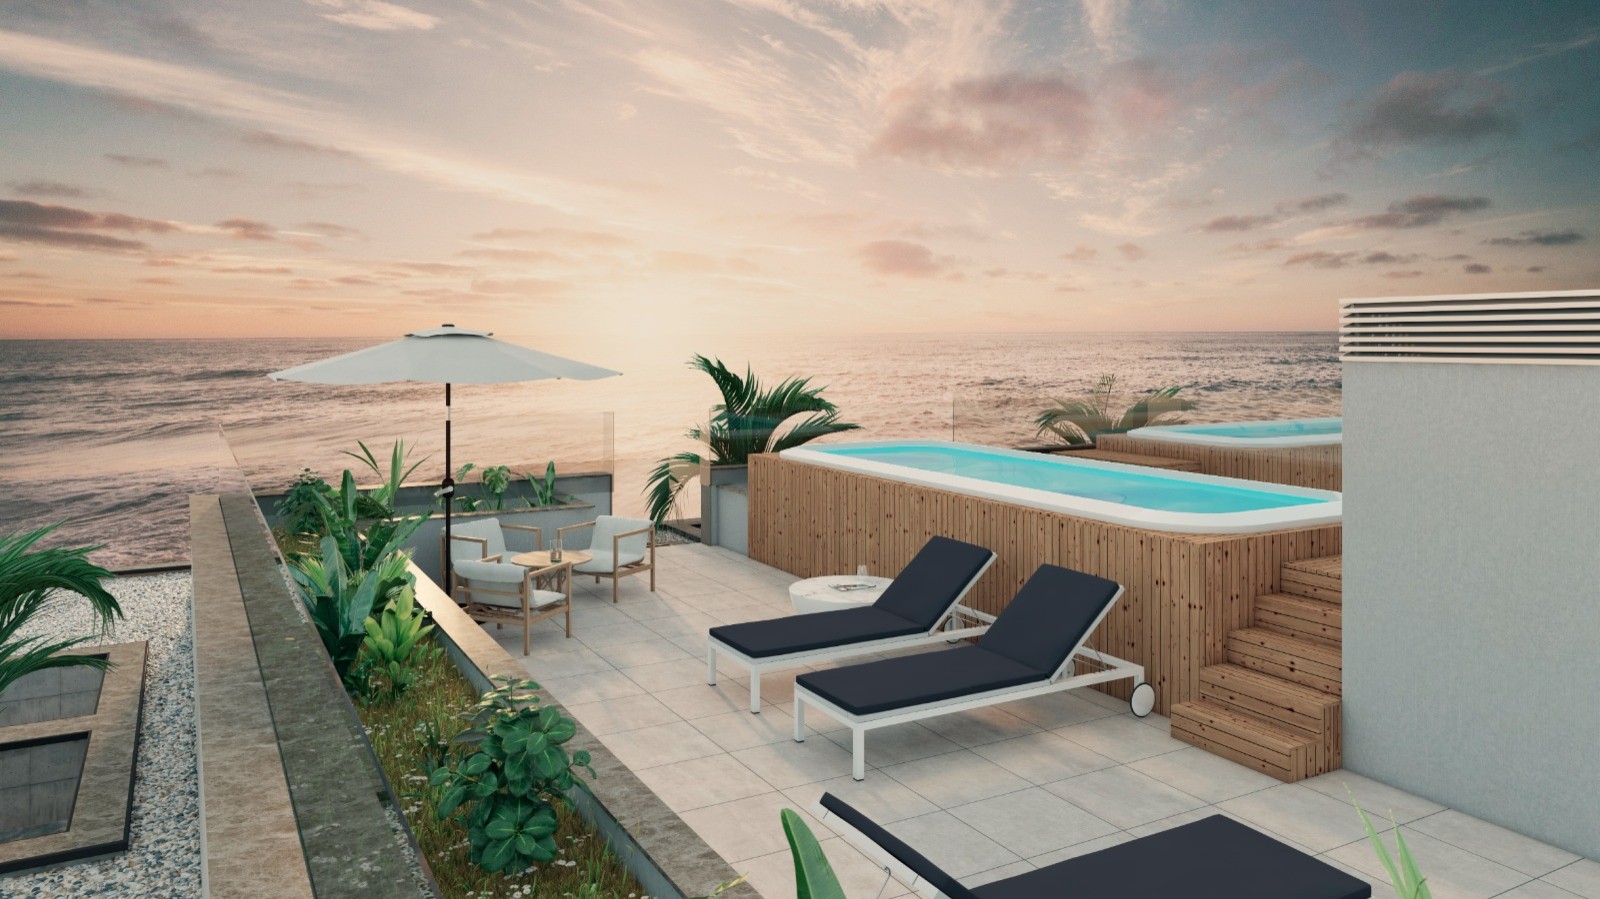 Apartamento T4 com vista de mar, terraço e piscina, para venda, Gaia, Portugal_250274